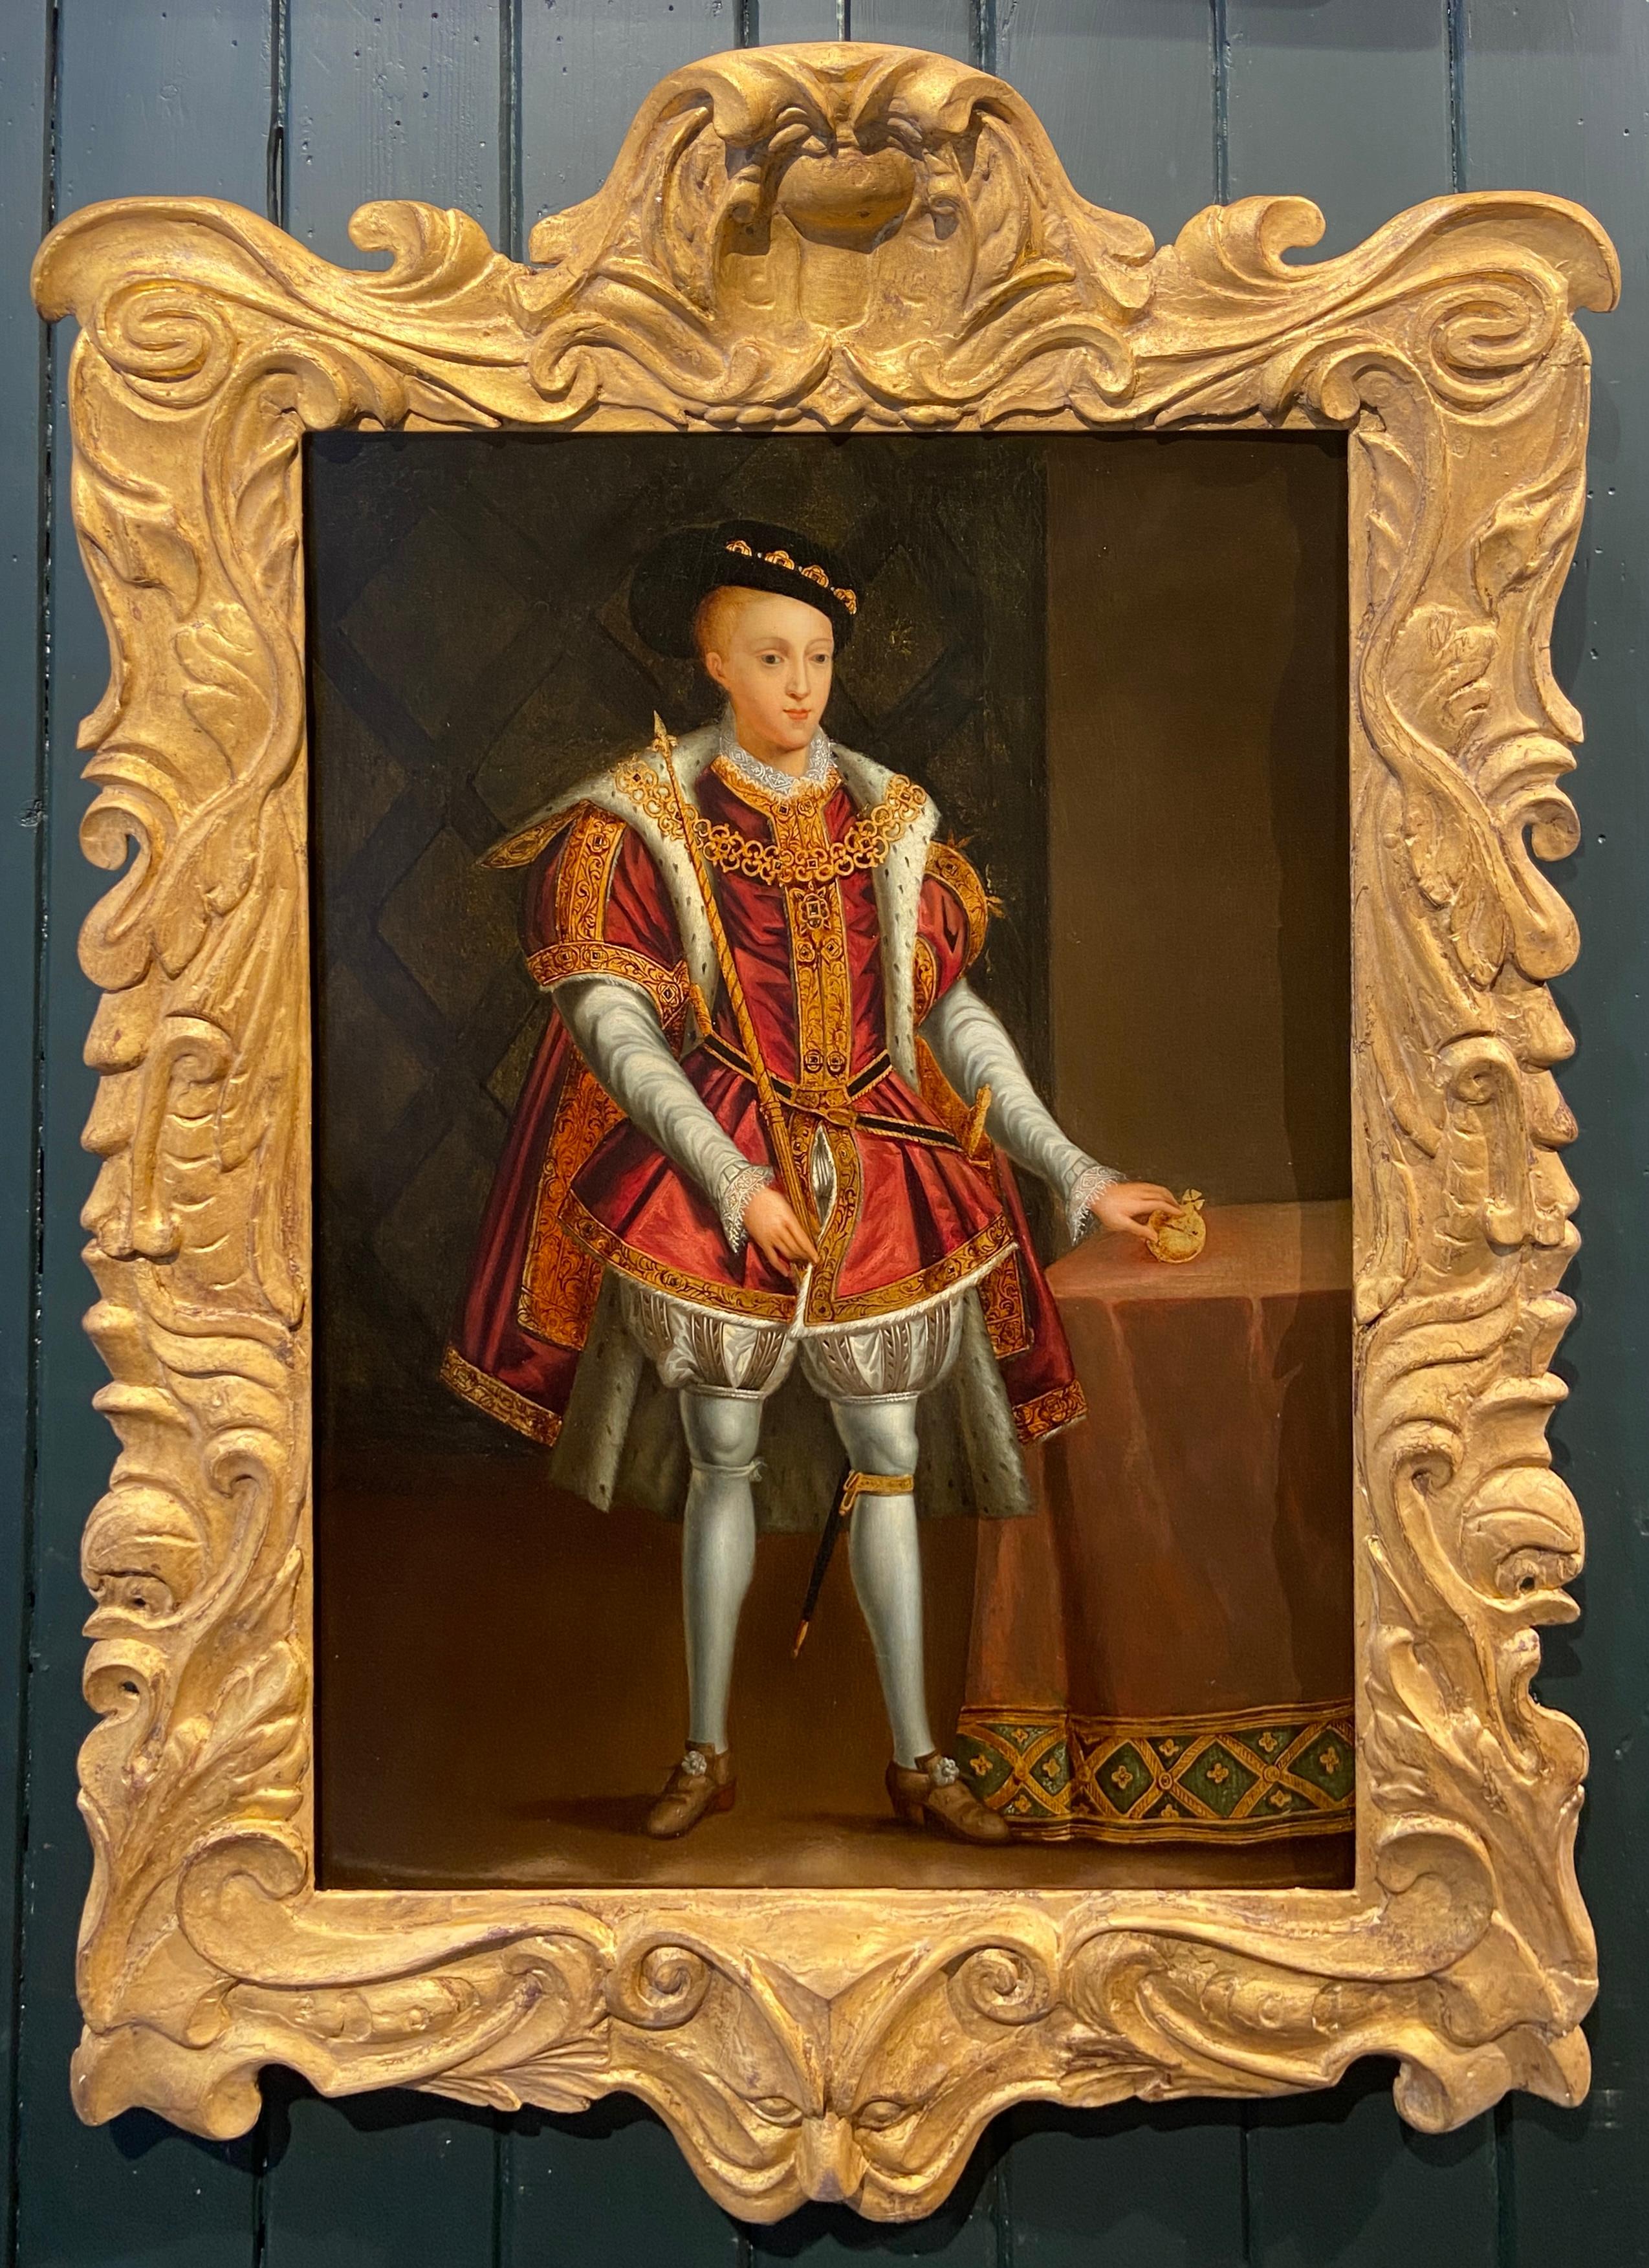 Portrait Painting English school 18th century - Portrait du roi Édouard VI, huile sur panneau avec feuille d'or, 18e siècle anglais